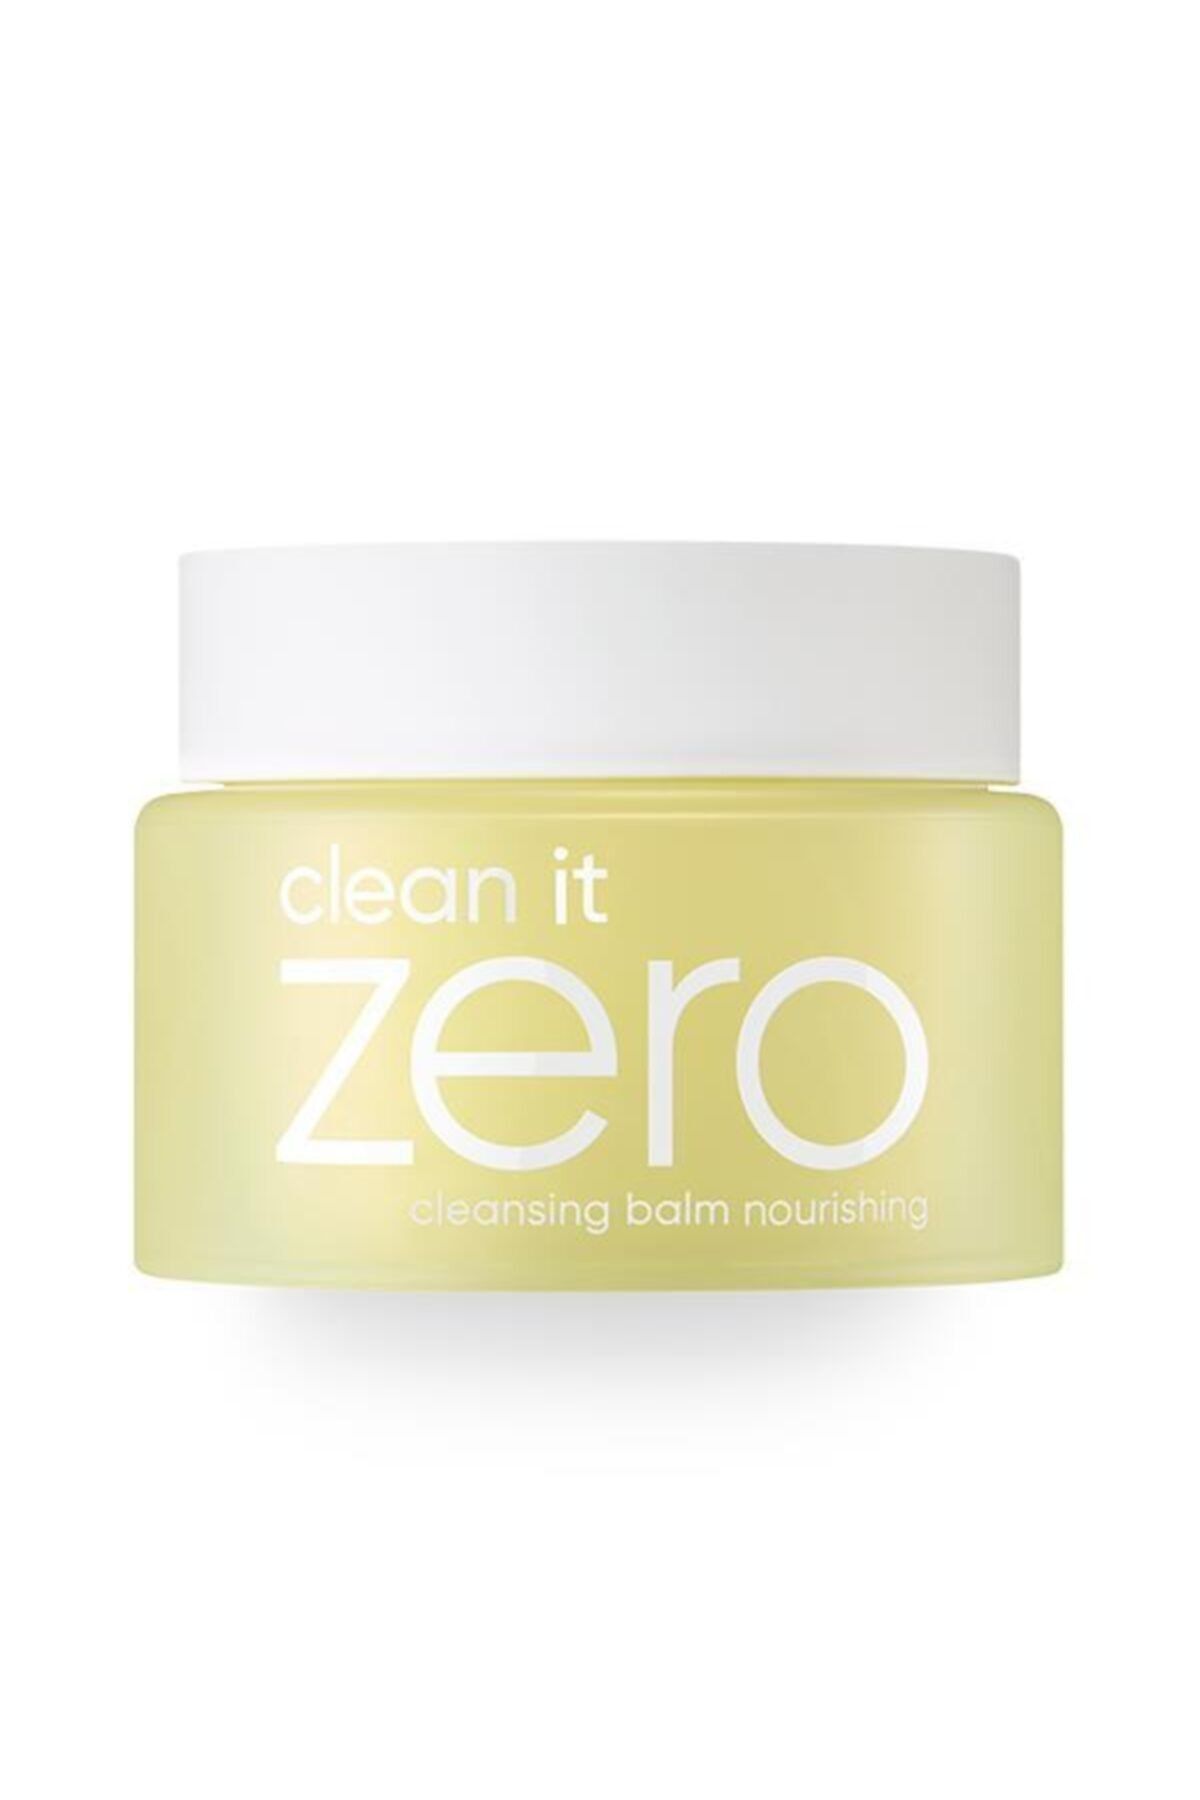 Banila Co Clean It Zero Cleansing Balm Nourishing - Kuru Cilt Için Yağ Bazlı Makyaj Ve Yüz Temizleyici Balm